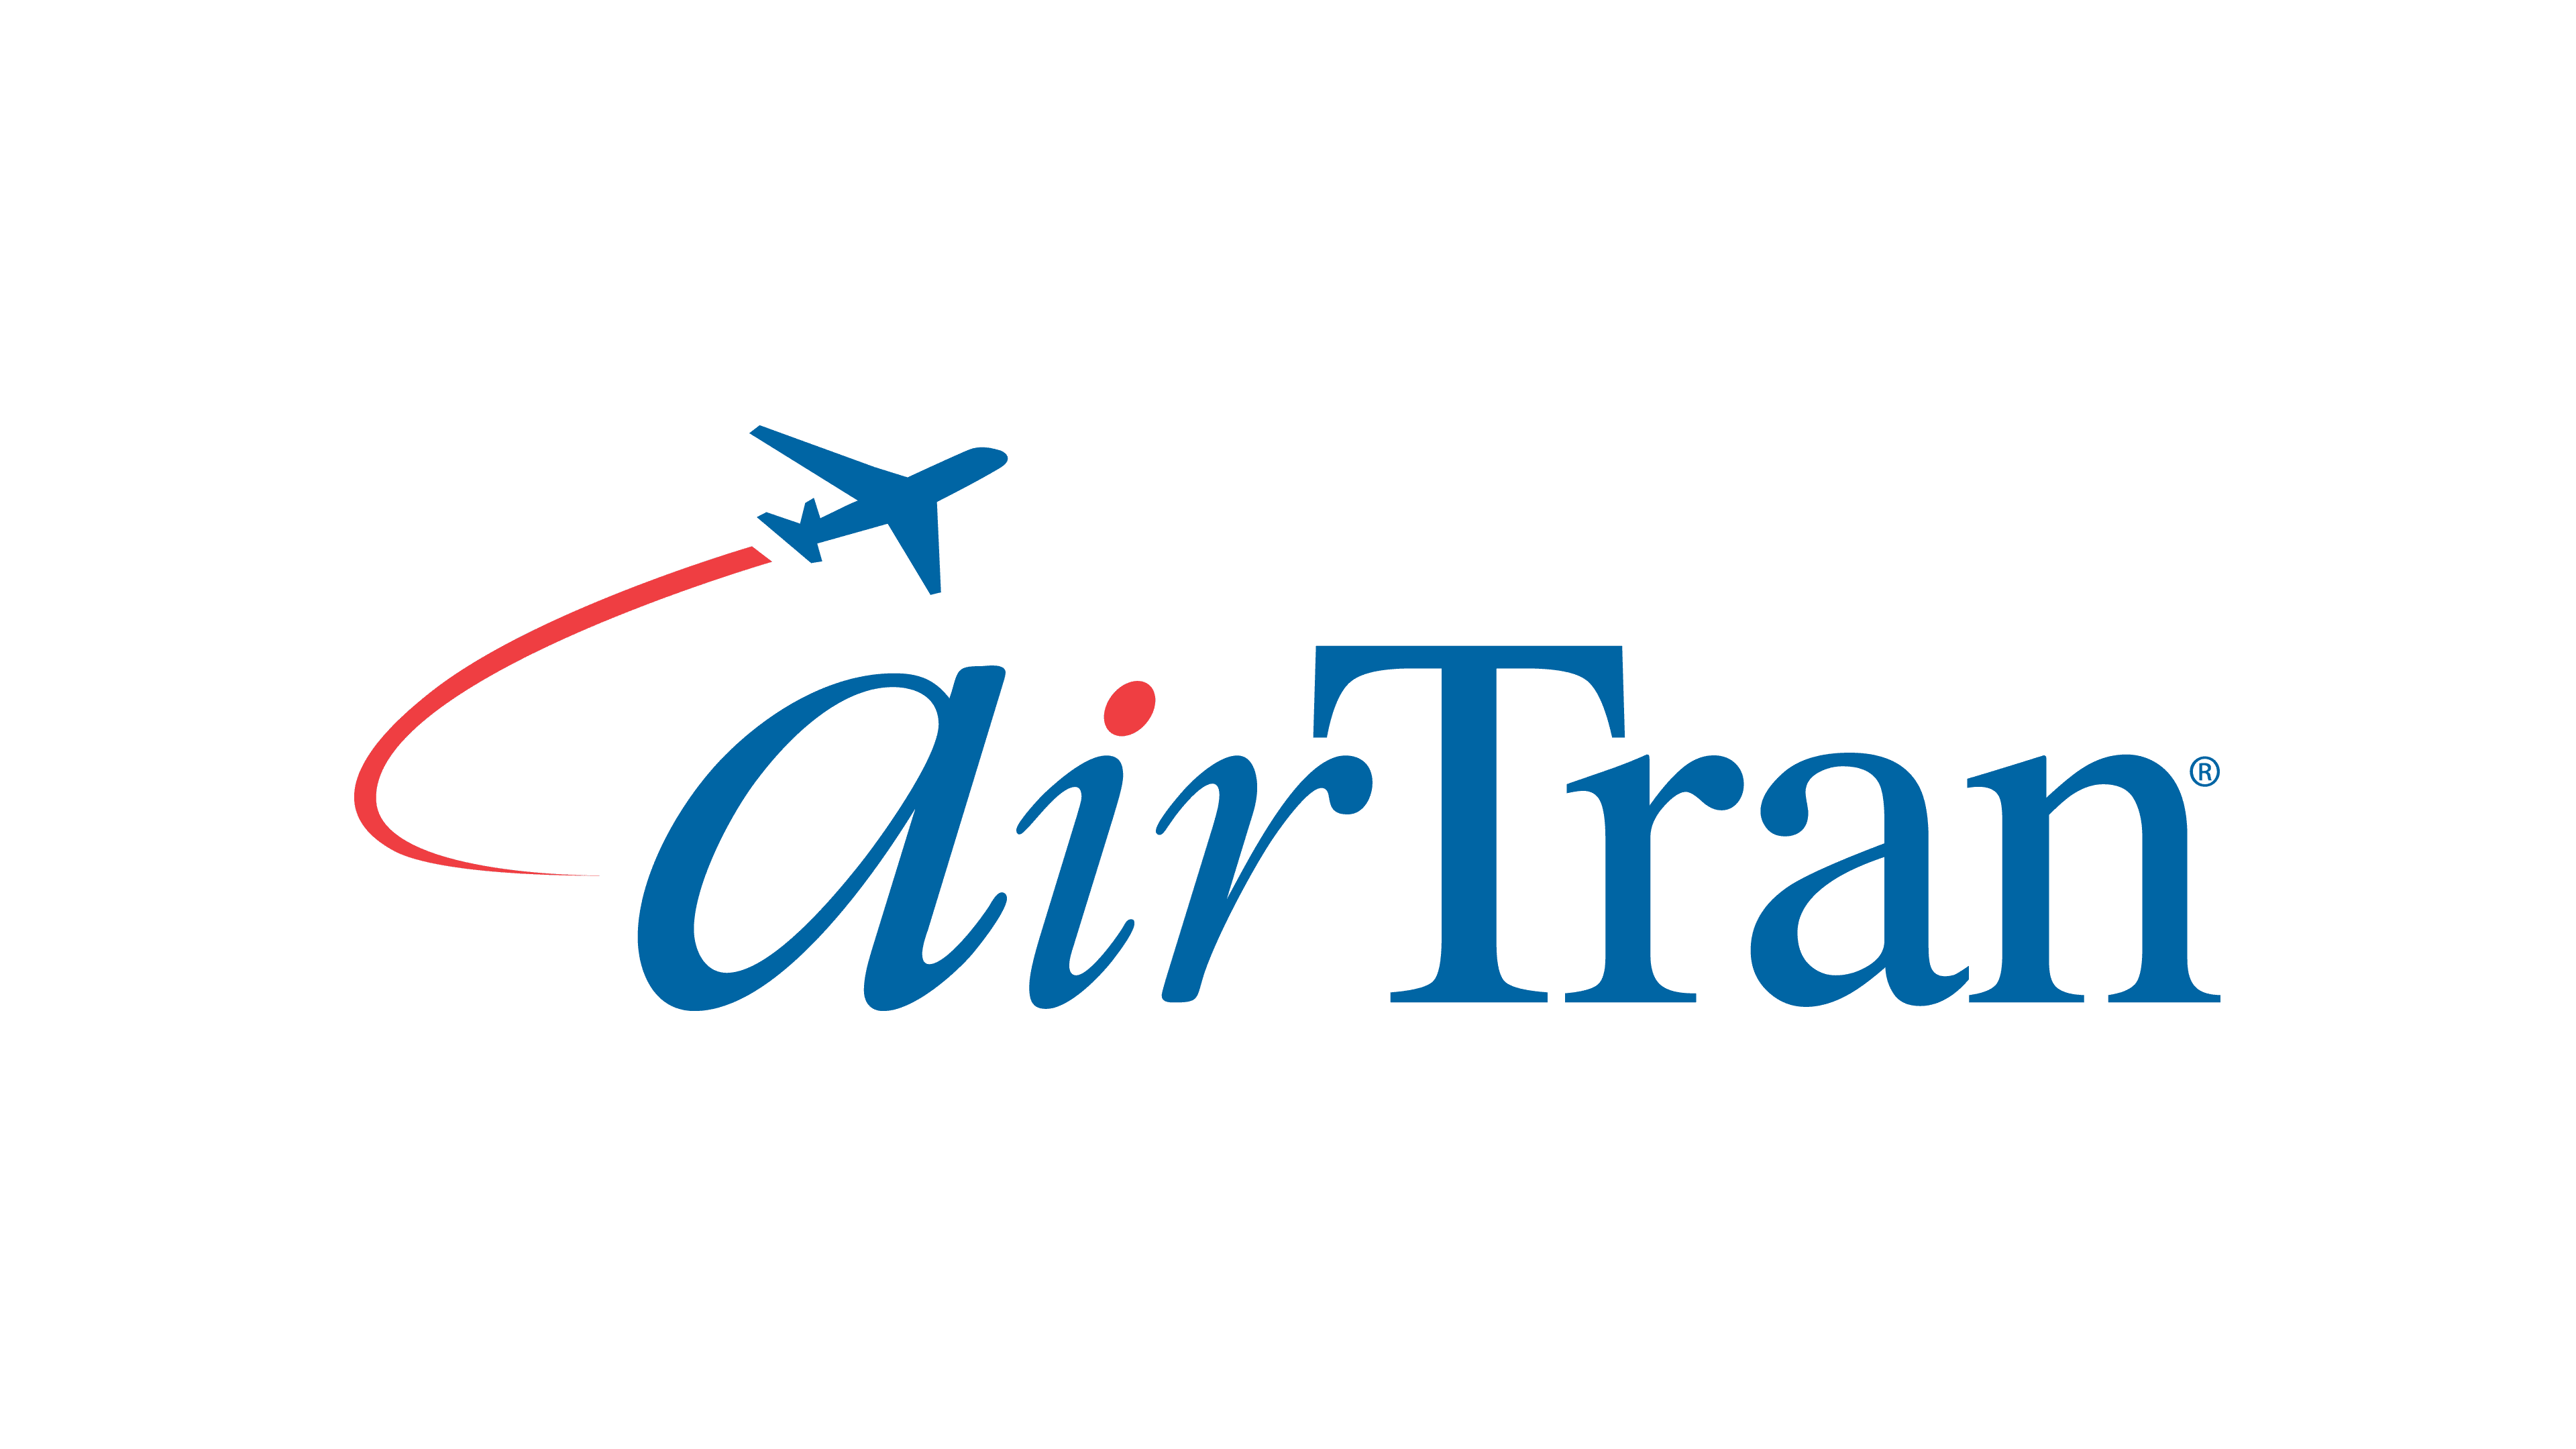 AirTran Airways logo